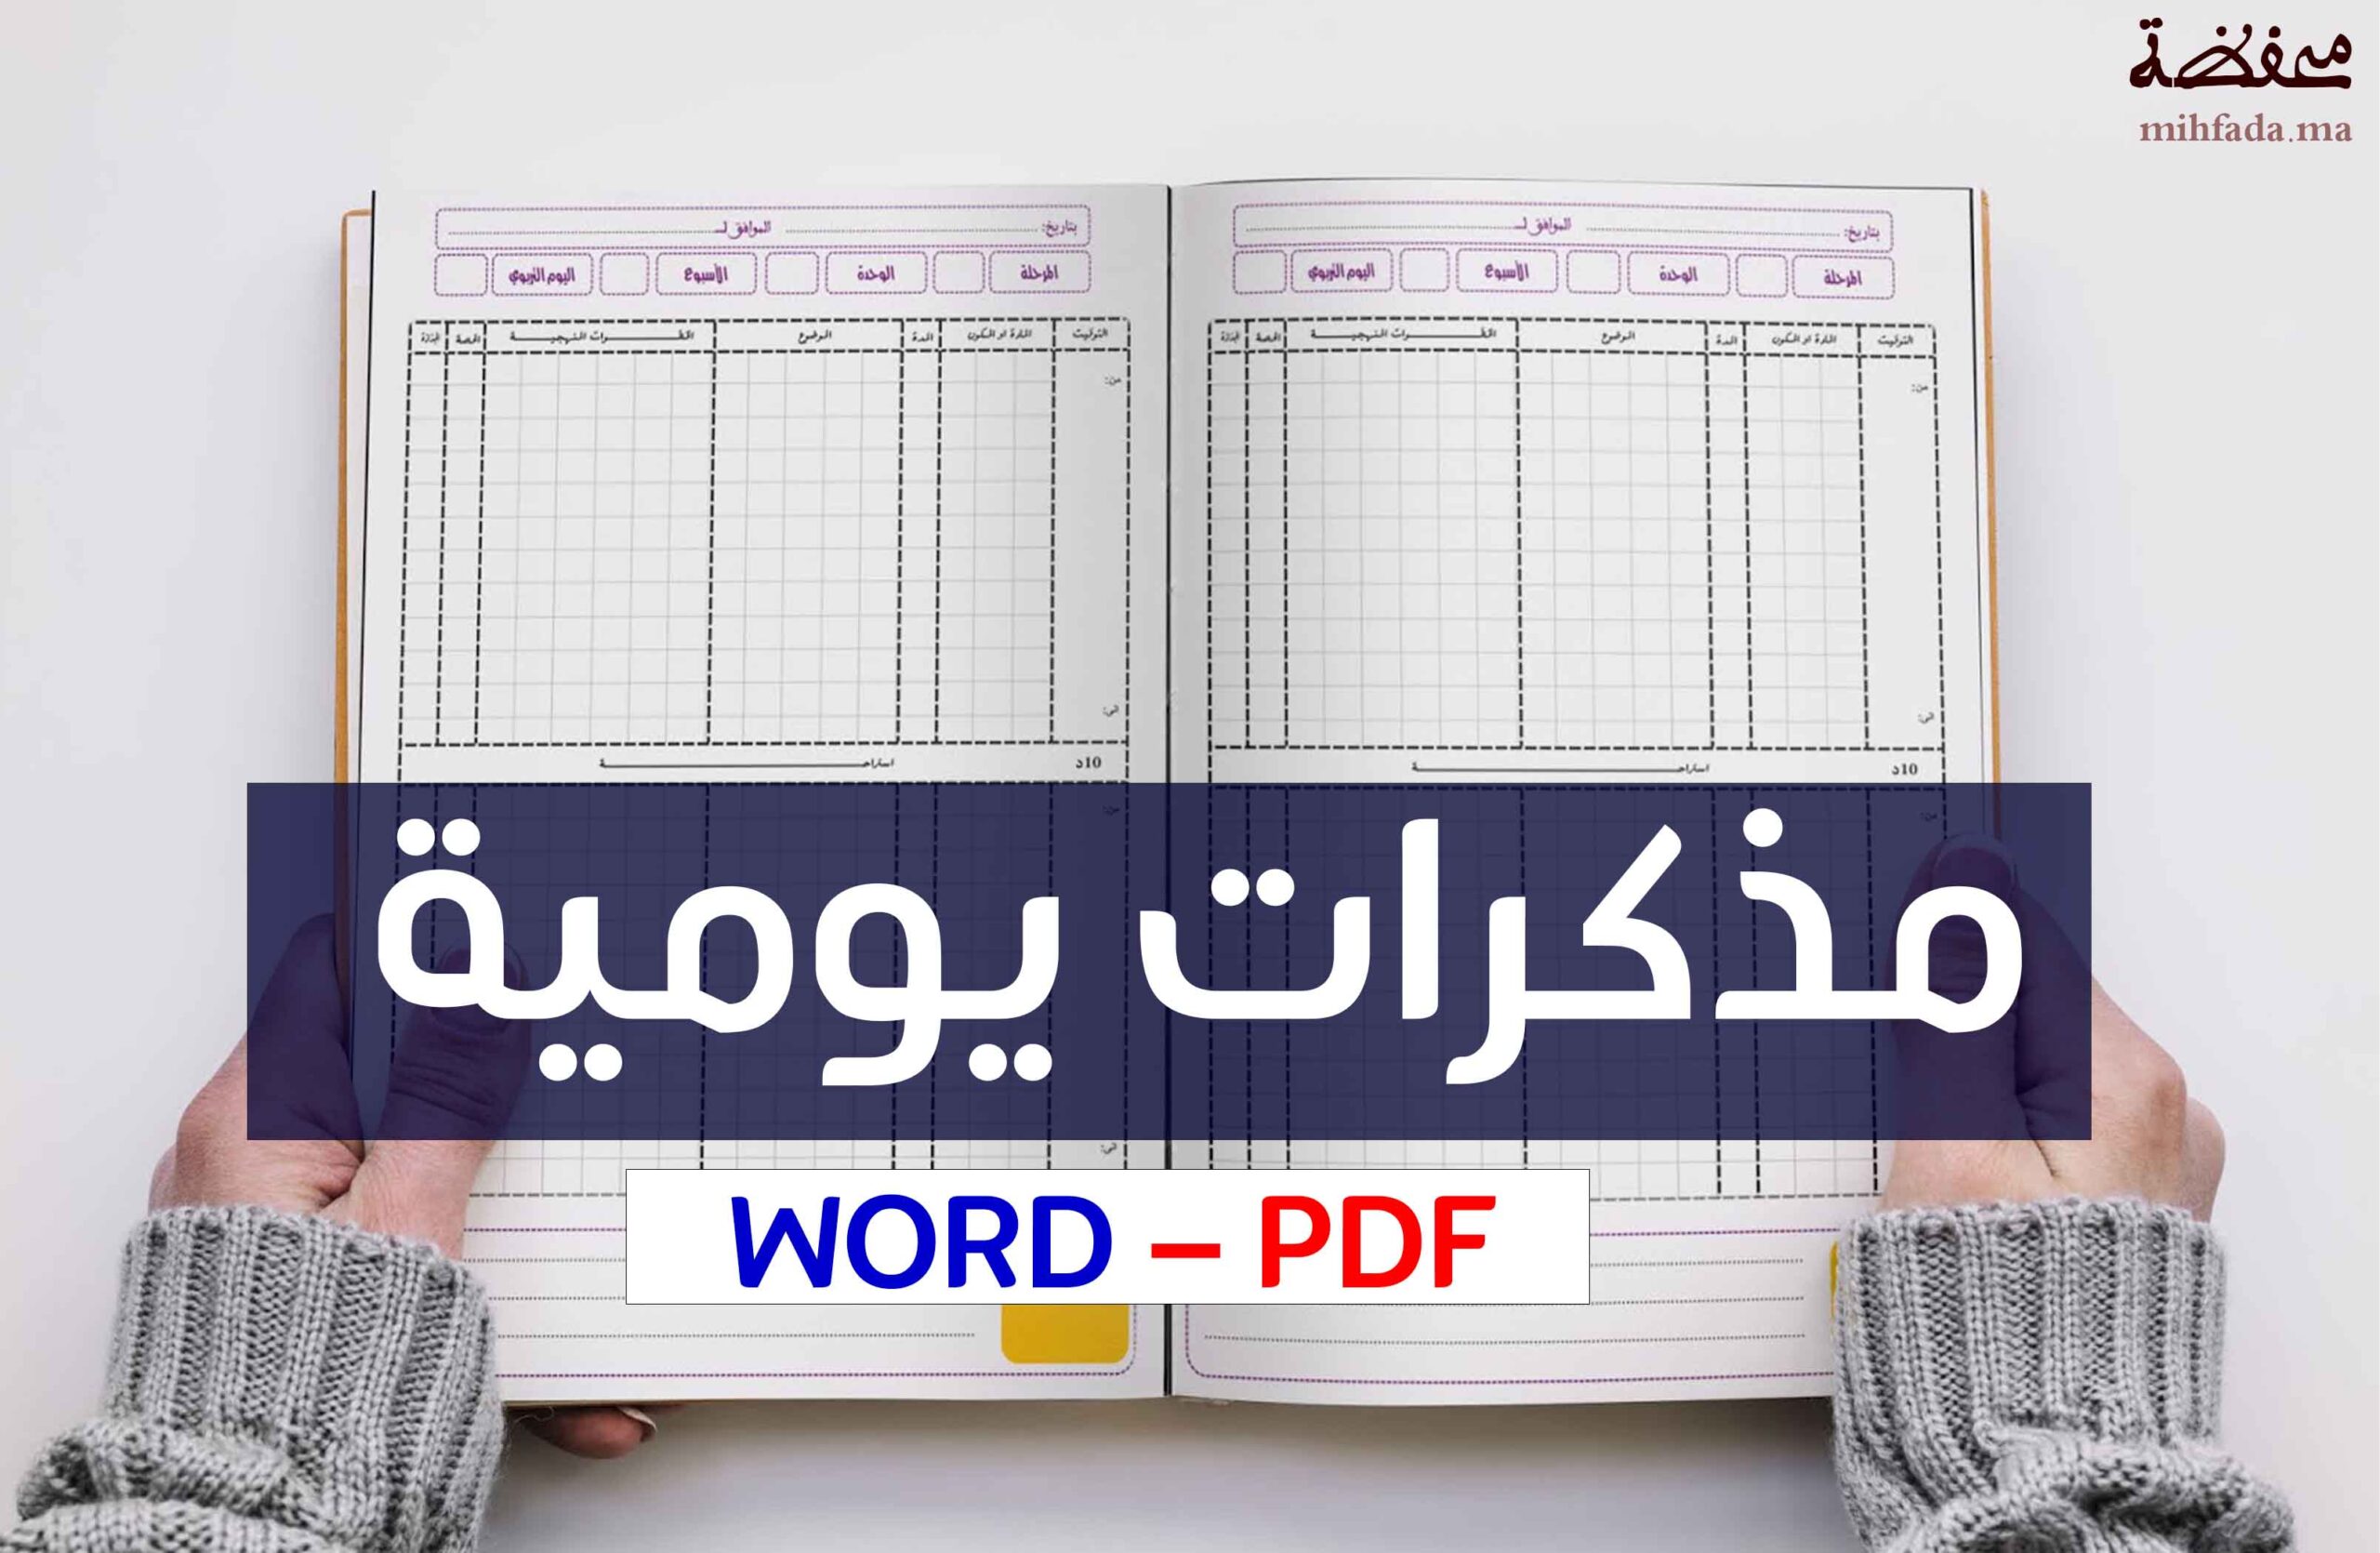 مذكرة يومية خاصة بالأقسام المشتركة للغة العربية